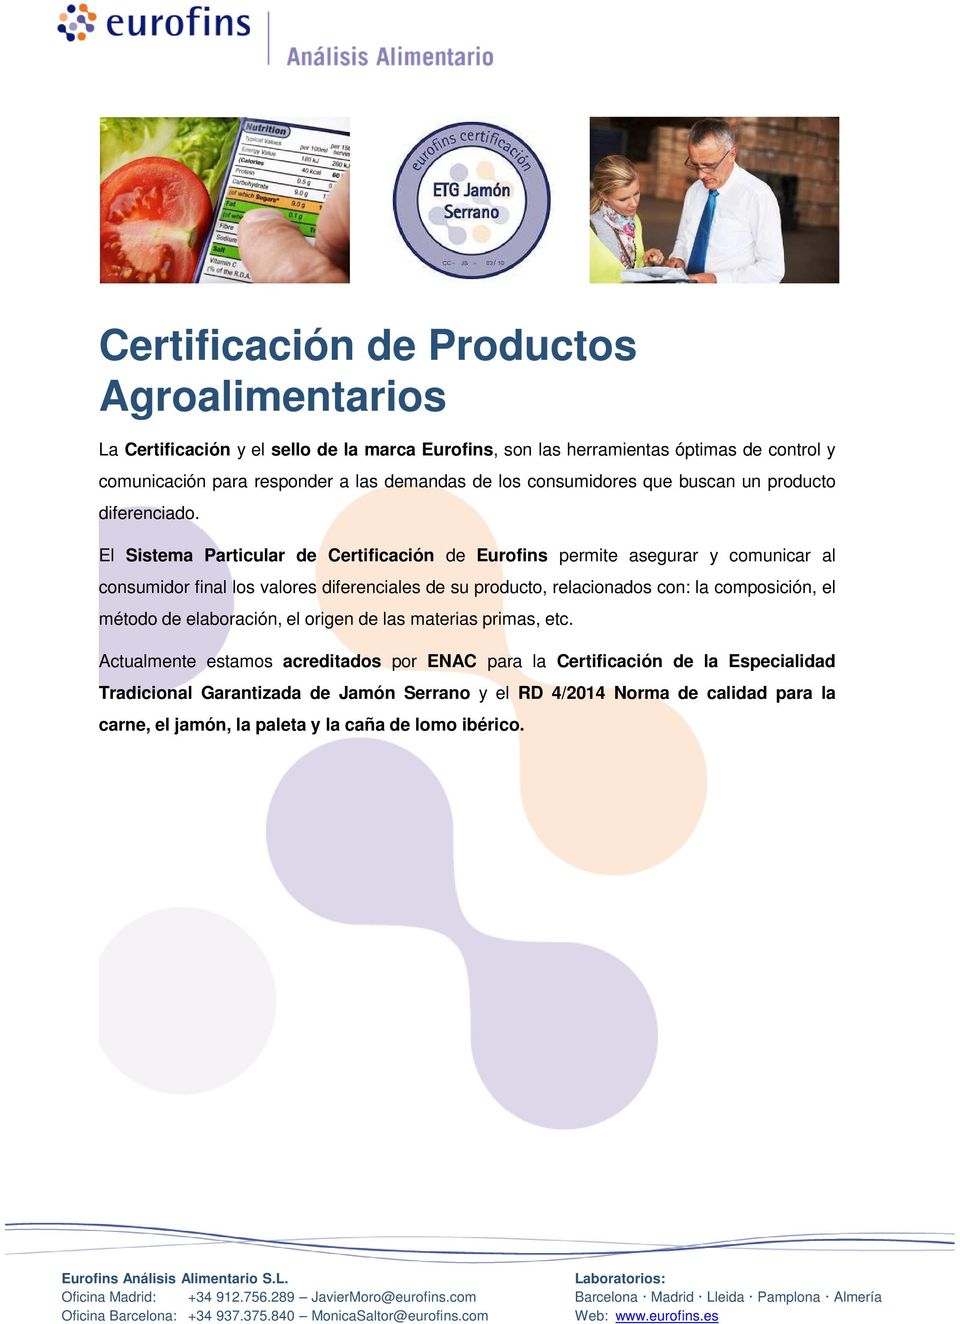 El Sistema Particular de Certificación de Eurofins permite asegurar y comunicar al consumidor final los valores diferenciales de su producto, relacionados con: la